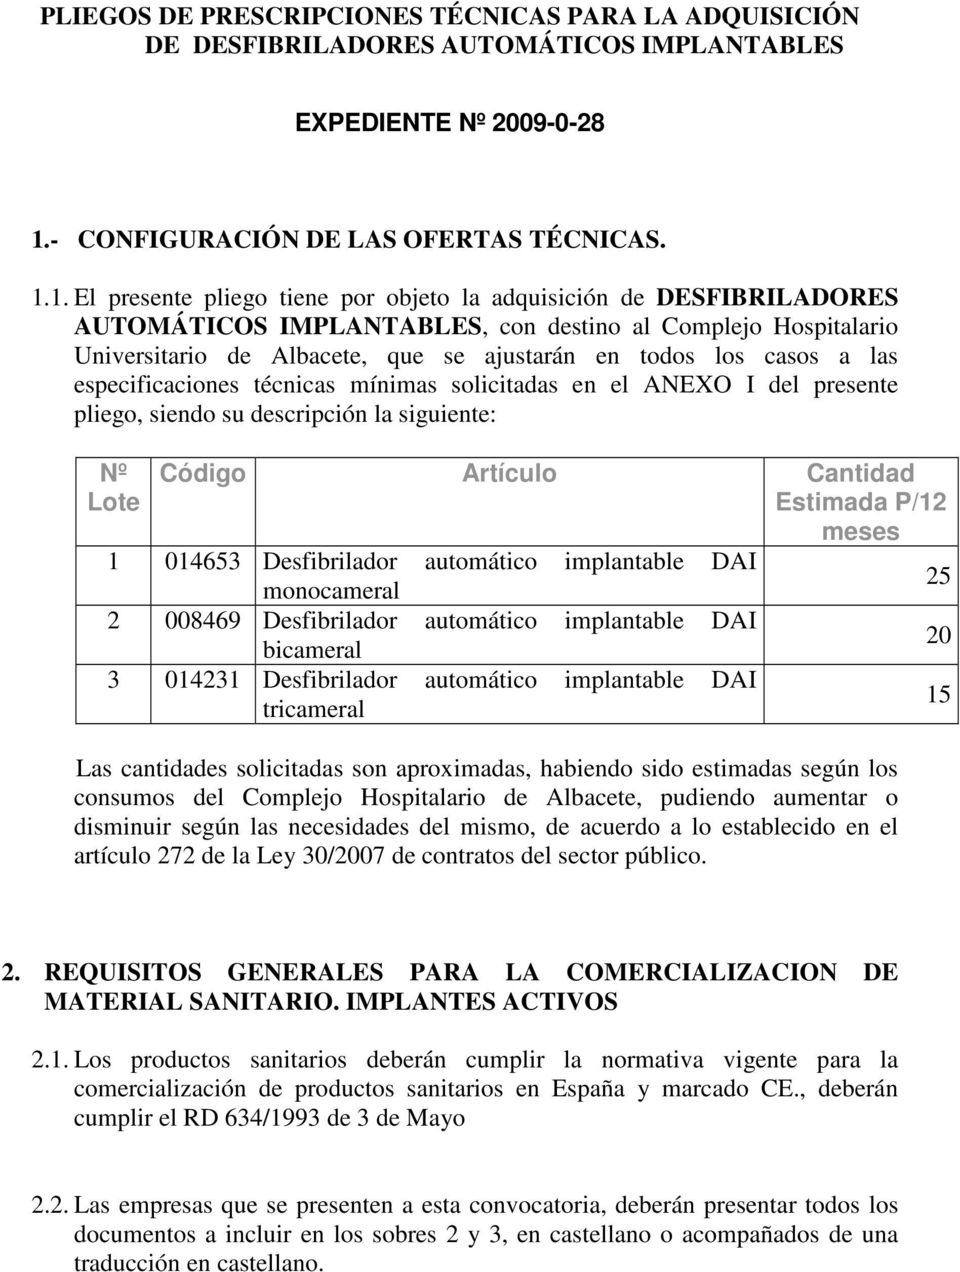 1. El presente pliego tiene por objeto la adquisición de DESFIBRILADORES AUTOMÁTICOS IMPLANTABLES, con destino al Complejo Hospitalario Universitario de Albacete, que se ajustarán en todos los casos